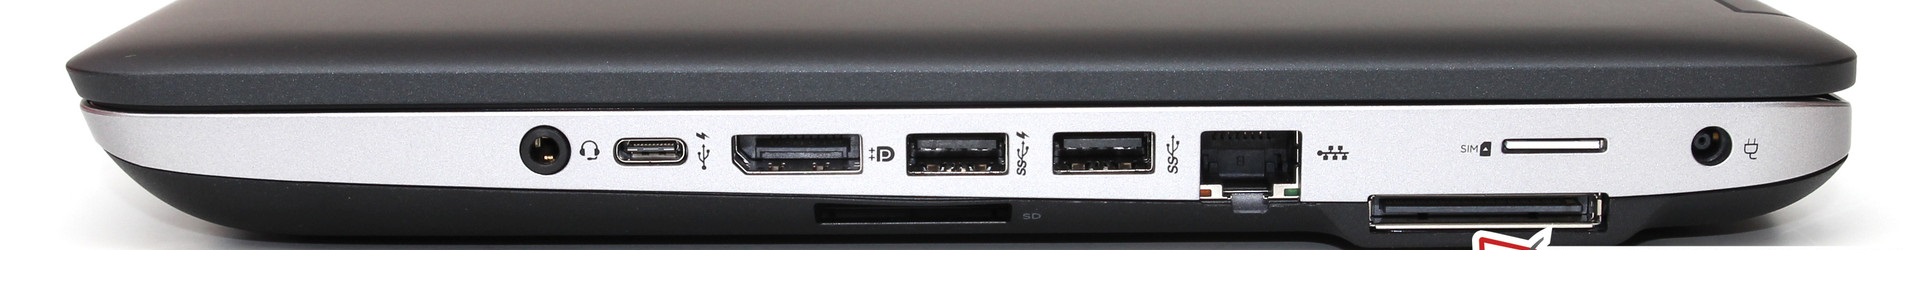 سمت راست: headset jack, USB Type-C, HDMI, 2x USB 3.0, Gbit-LAN, SIM slot, docking port, power socket